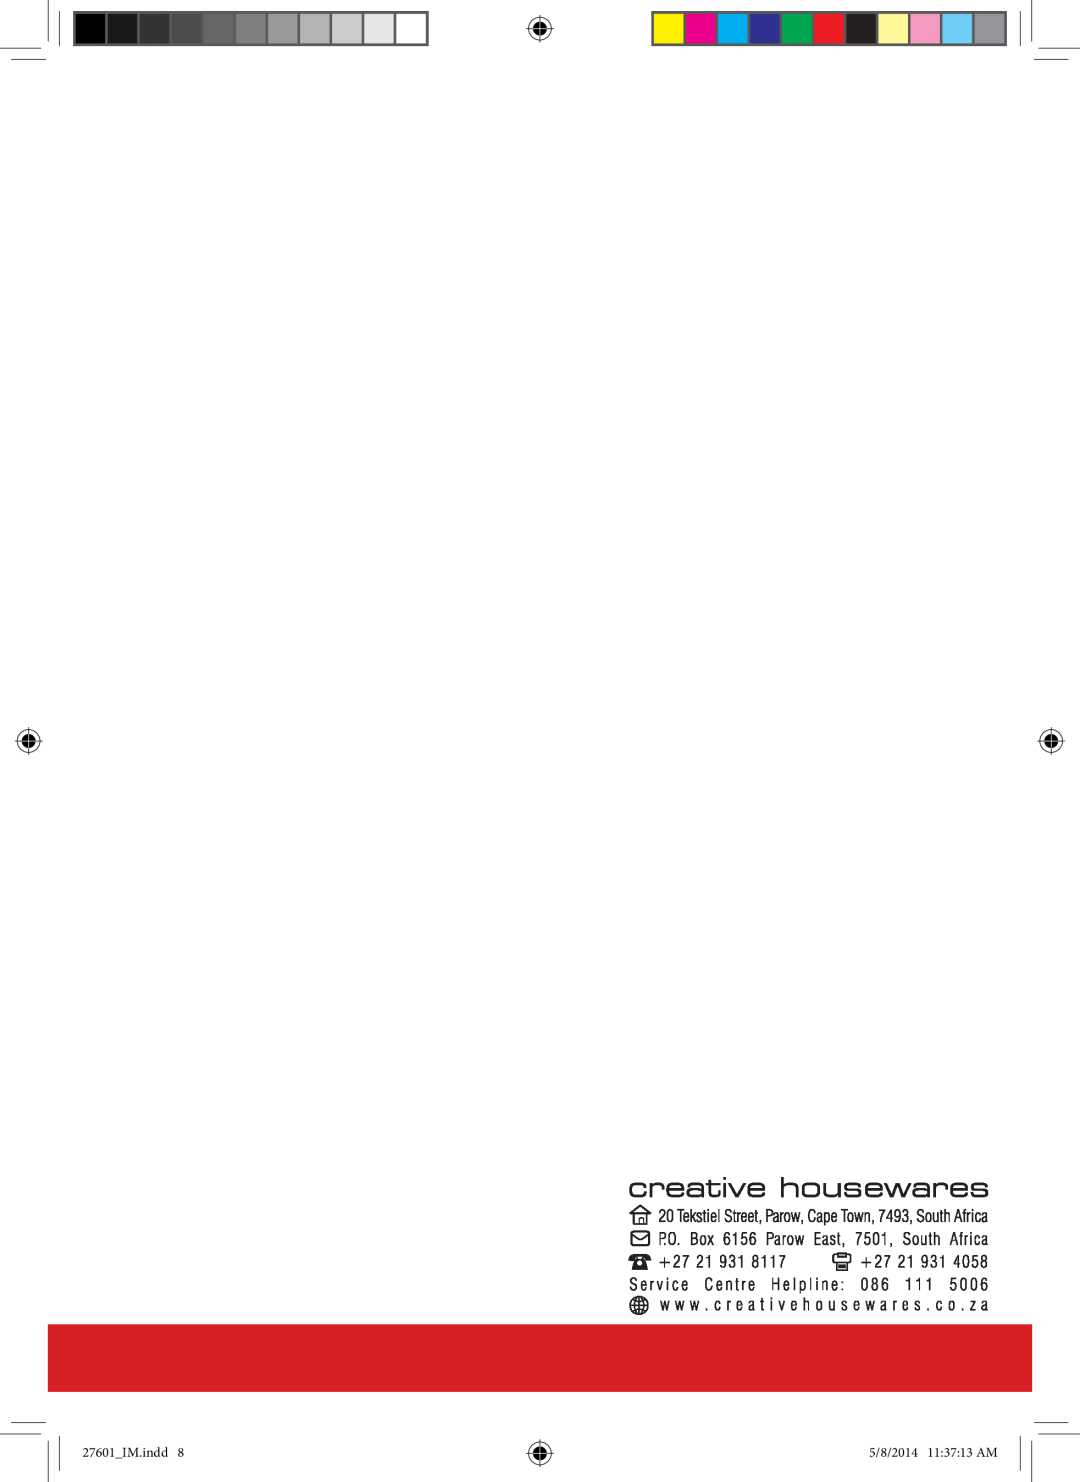 Mellerware 1300W manual 27601IM.indd, 5/8/2014 113713 AM 